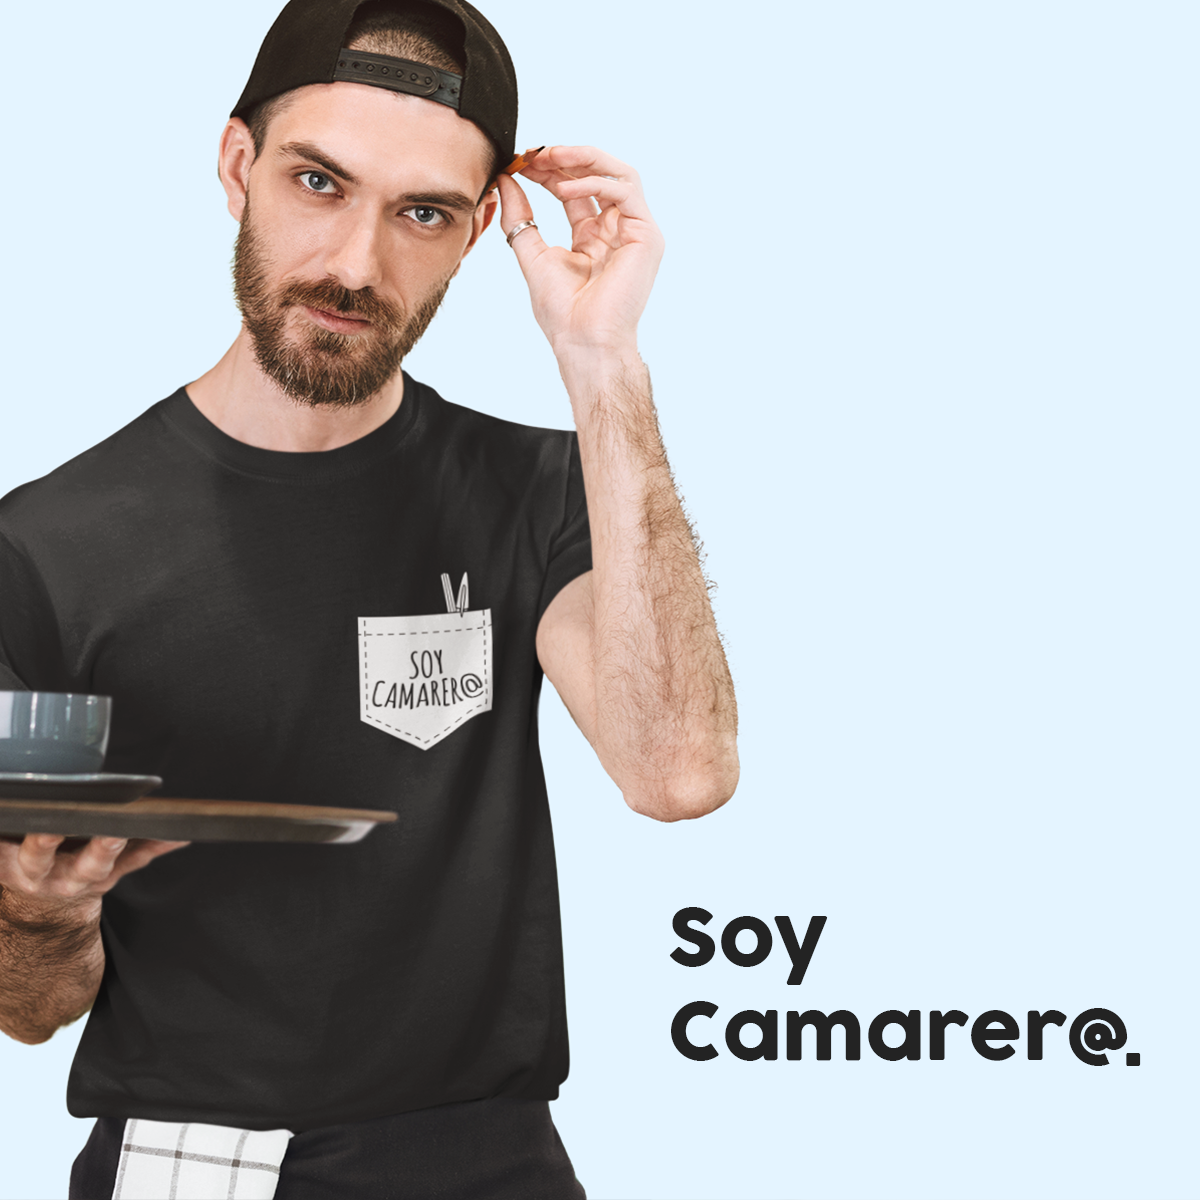 Soy Camarer@